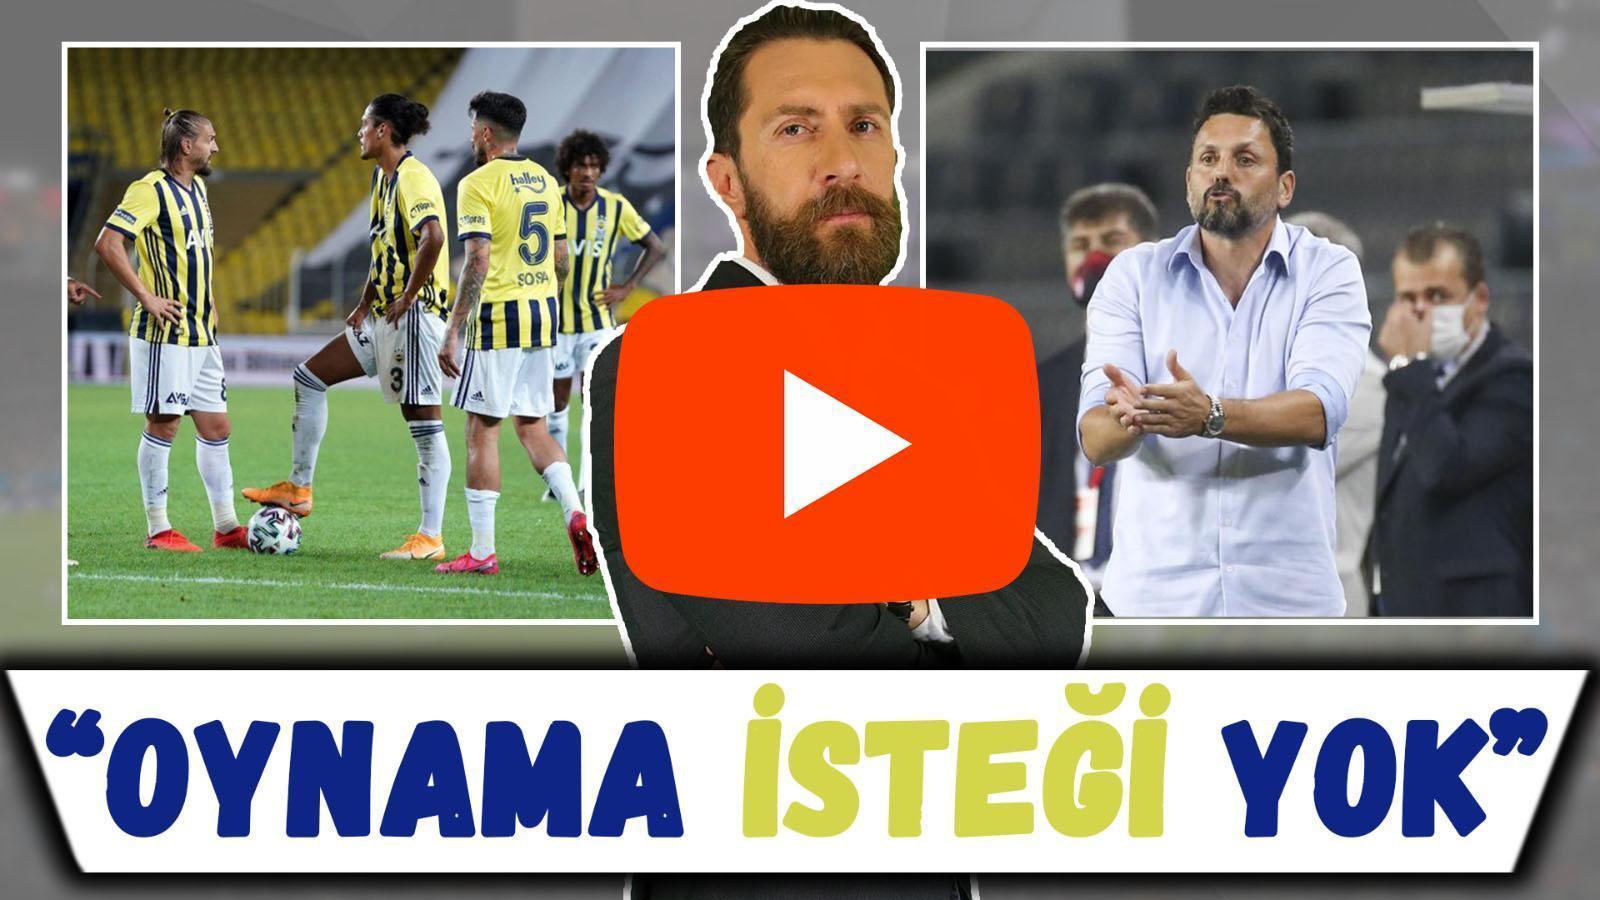 Erman Özgür Süper Lig karşılaşmalarını değerlendirdi: “Fenerbahçede oynama isteğinin olmayışı haftanın olayı oldu”